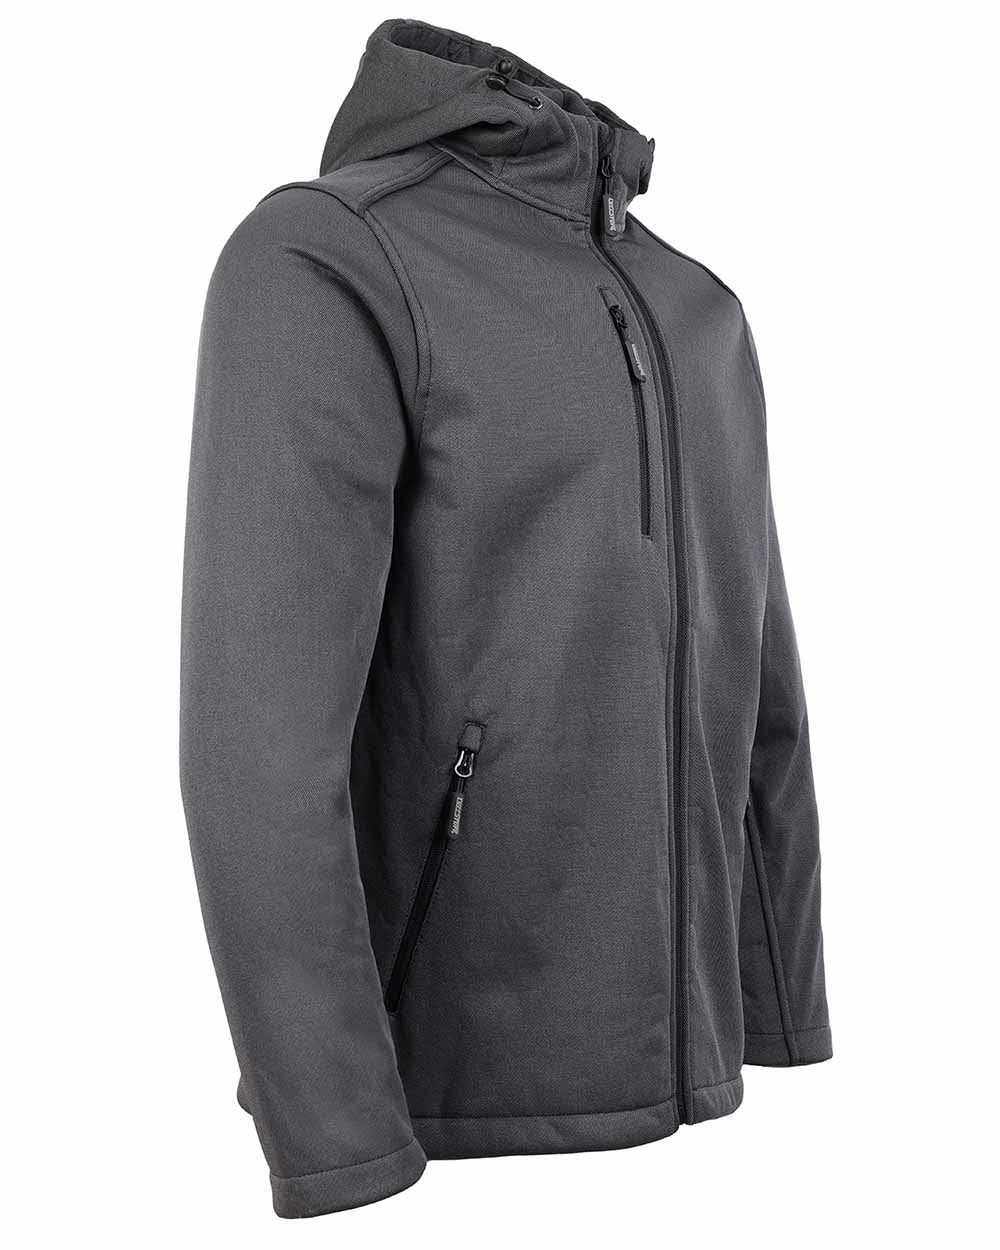 Side view showing zip pockets TuffStuff Hale Jacket in grey 